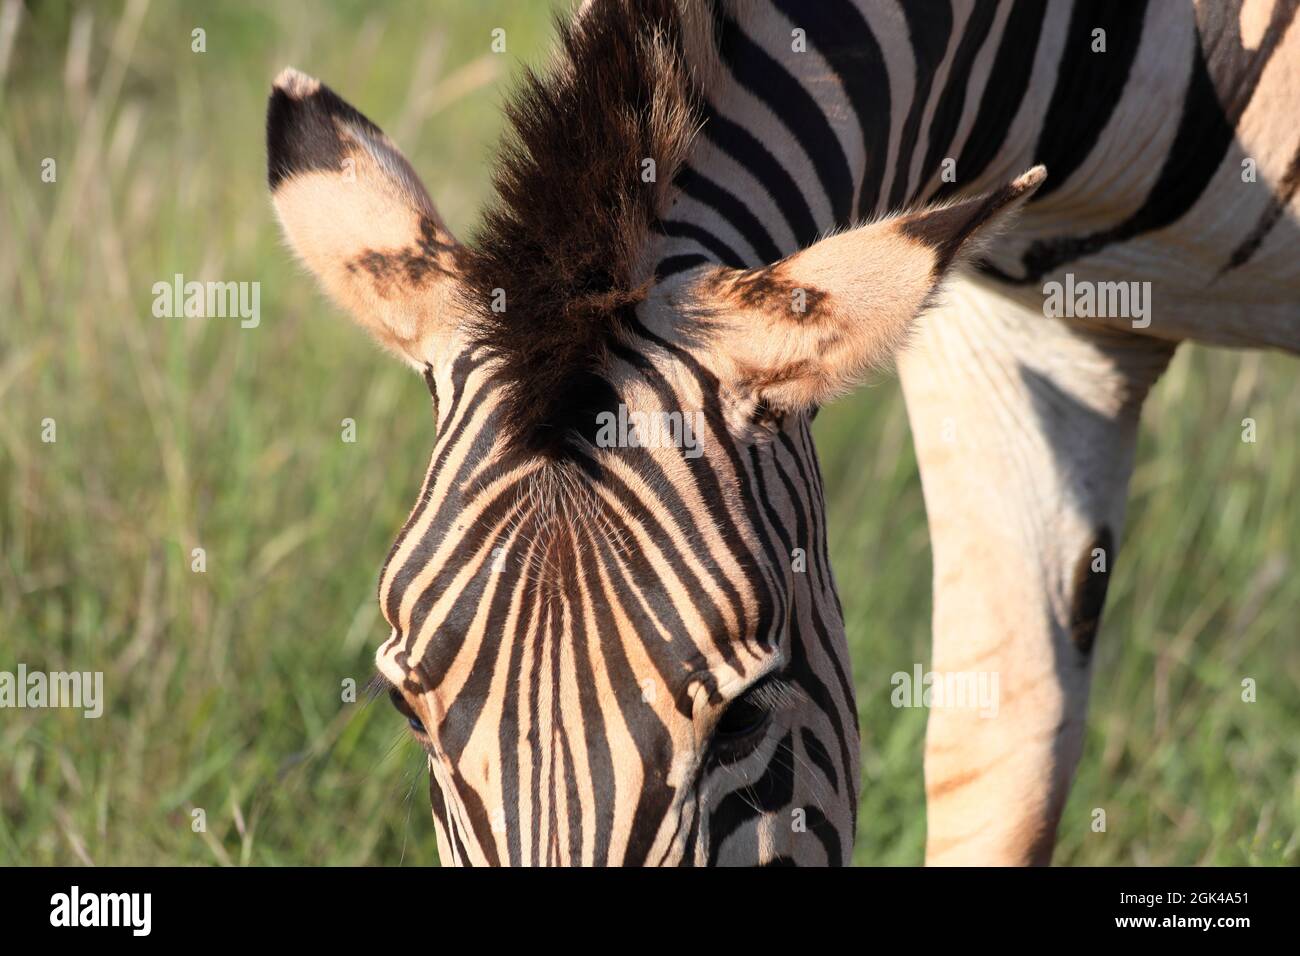 Nahaufnahme des Kopfes und maine eines Chapman-Zebras (Equus quagga ssp Chapmani), das Gras frisst, Südafrika Stockfoto